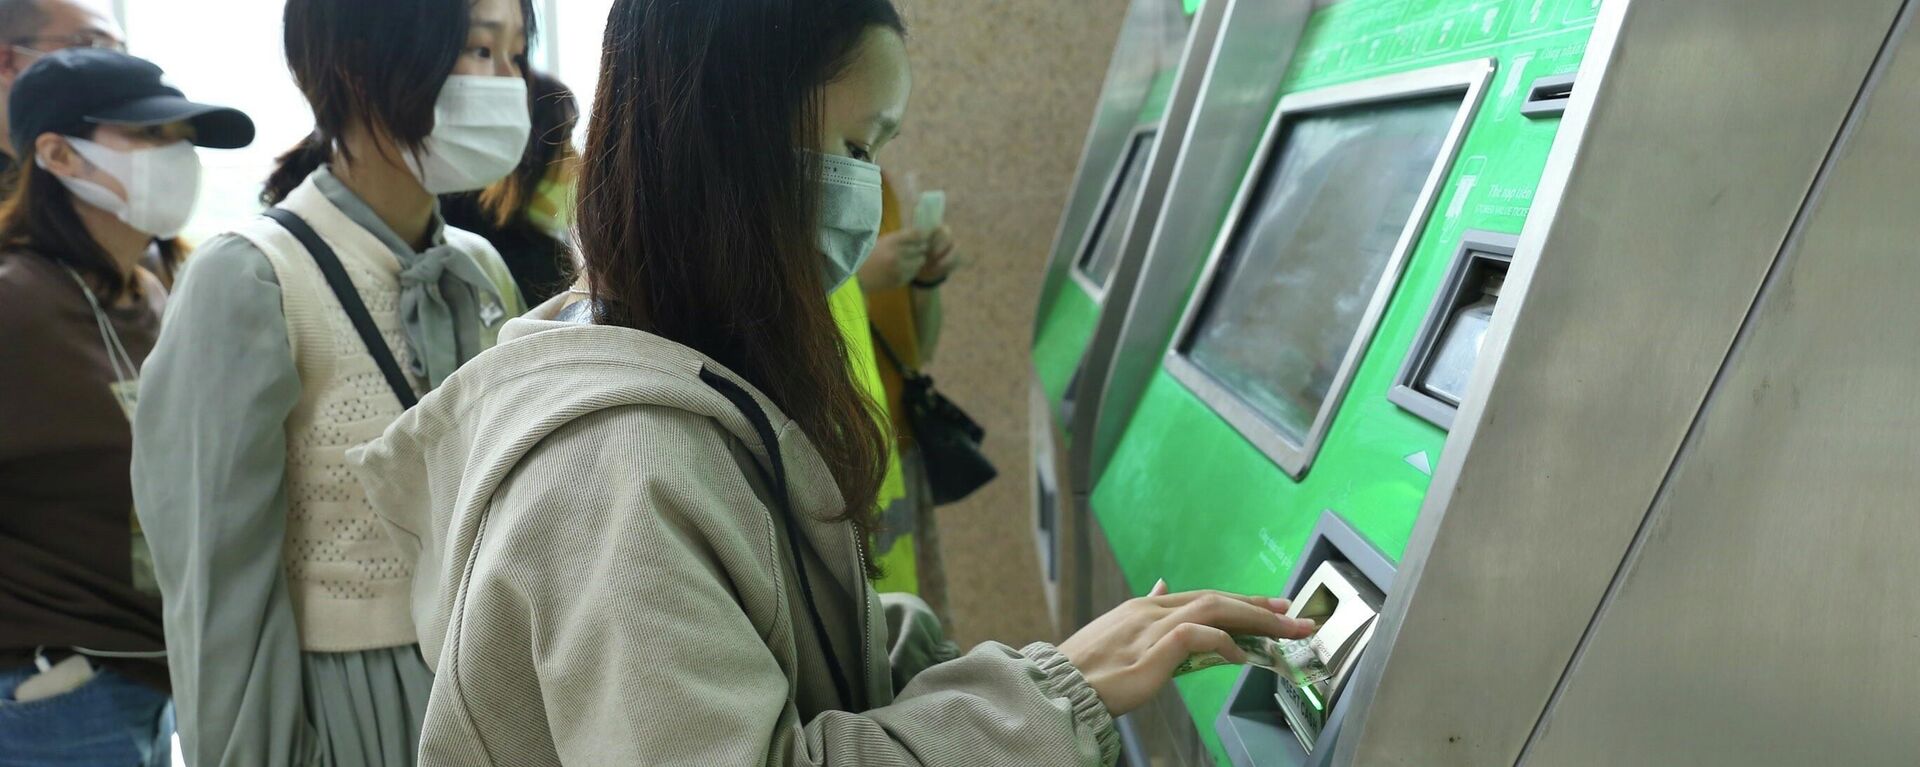 Các máy bán thẻ tự động được bố trí ở tất cả các ga, thuận tiện cho hành khách mua vé. - Sputnik Việt Nam, 1920, 21.11.2021